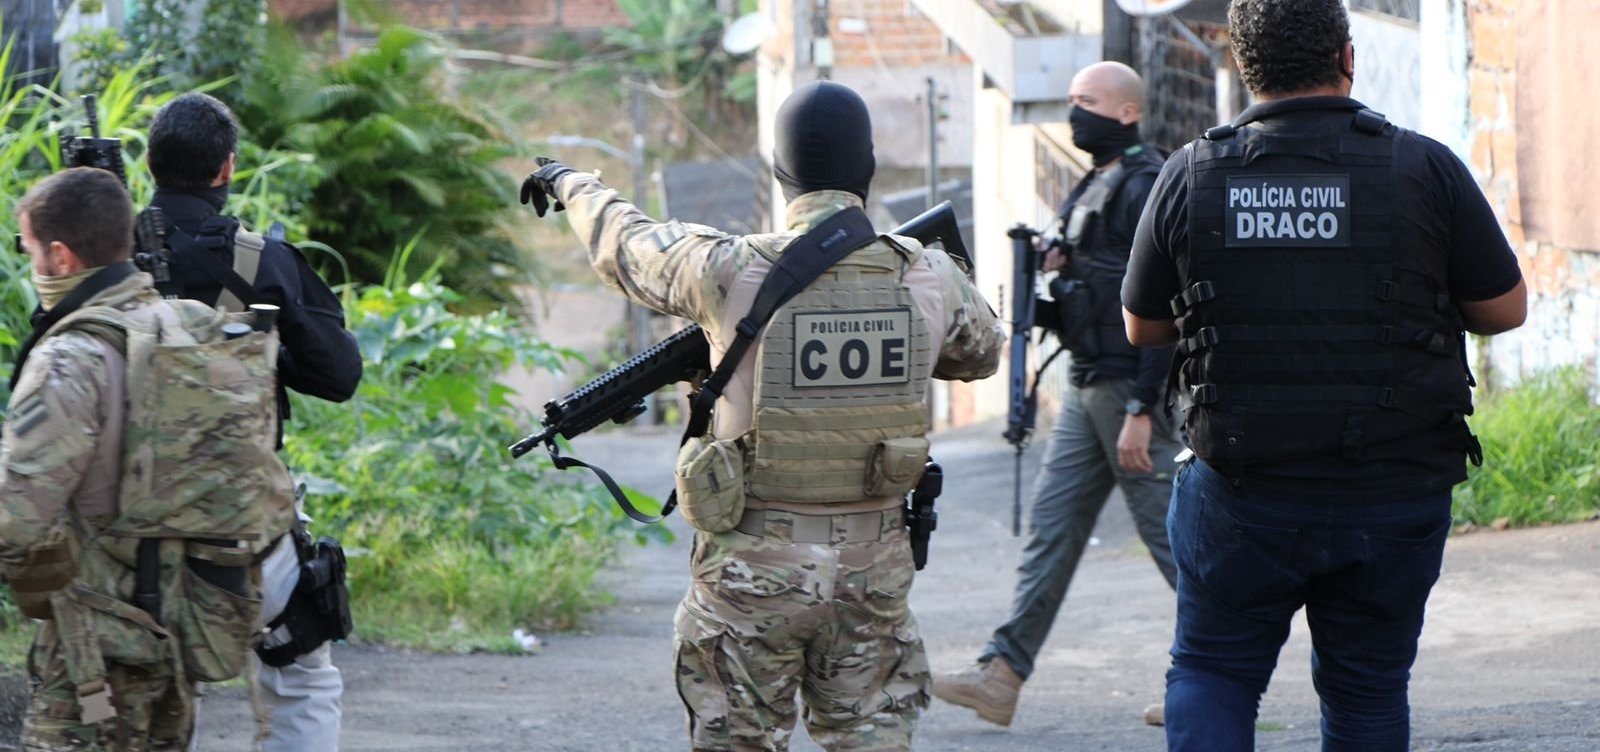 Após ocupação da PM, Polícia Civil cumpre mandados de prisão em Valéria